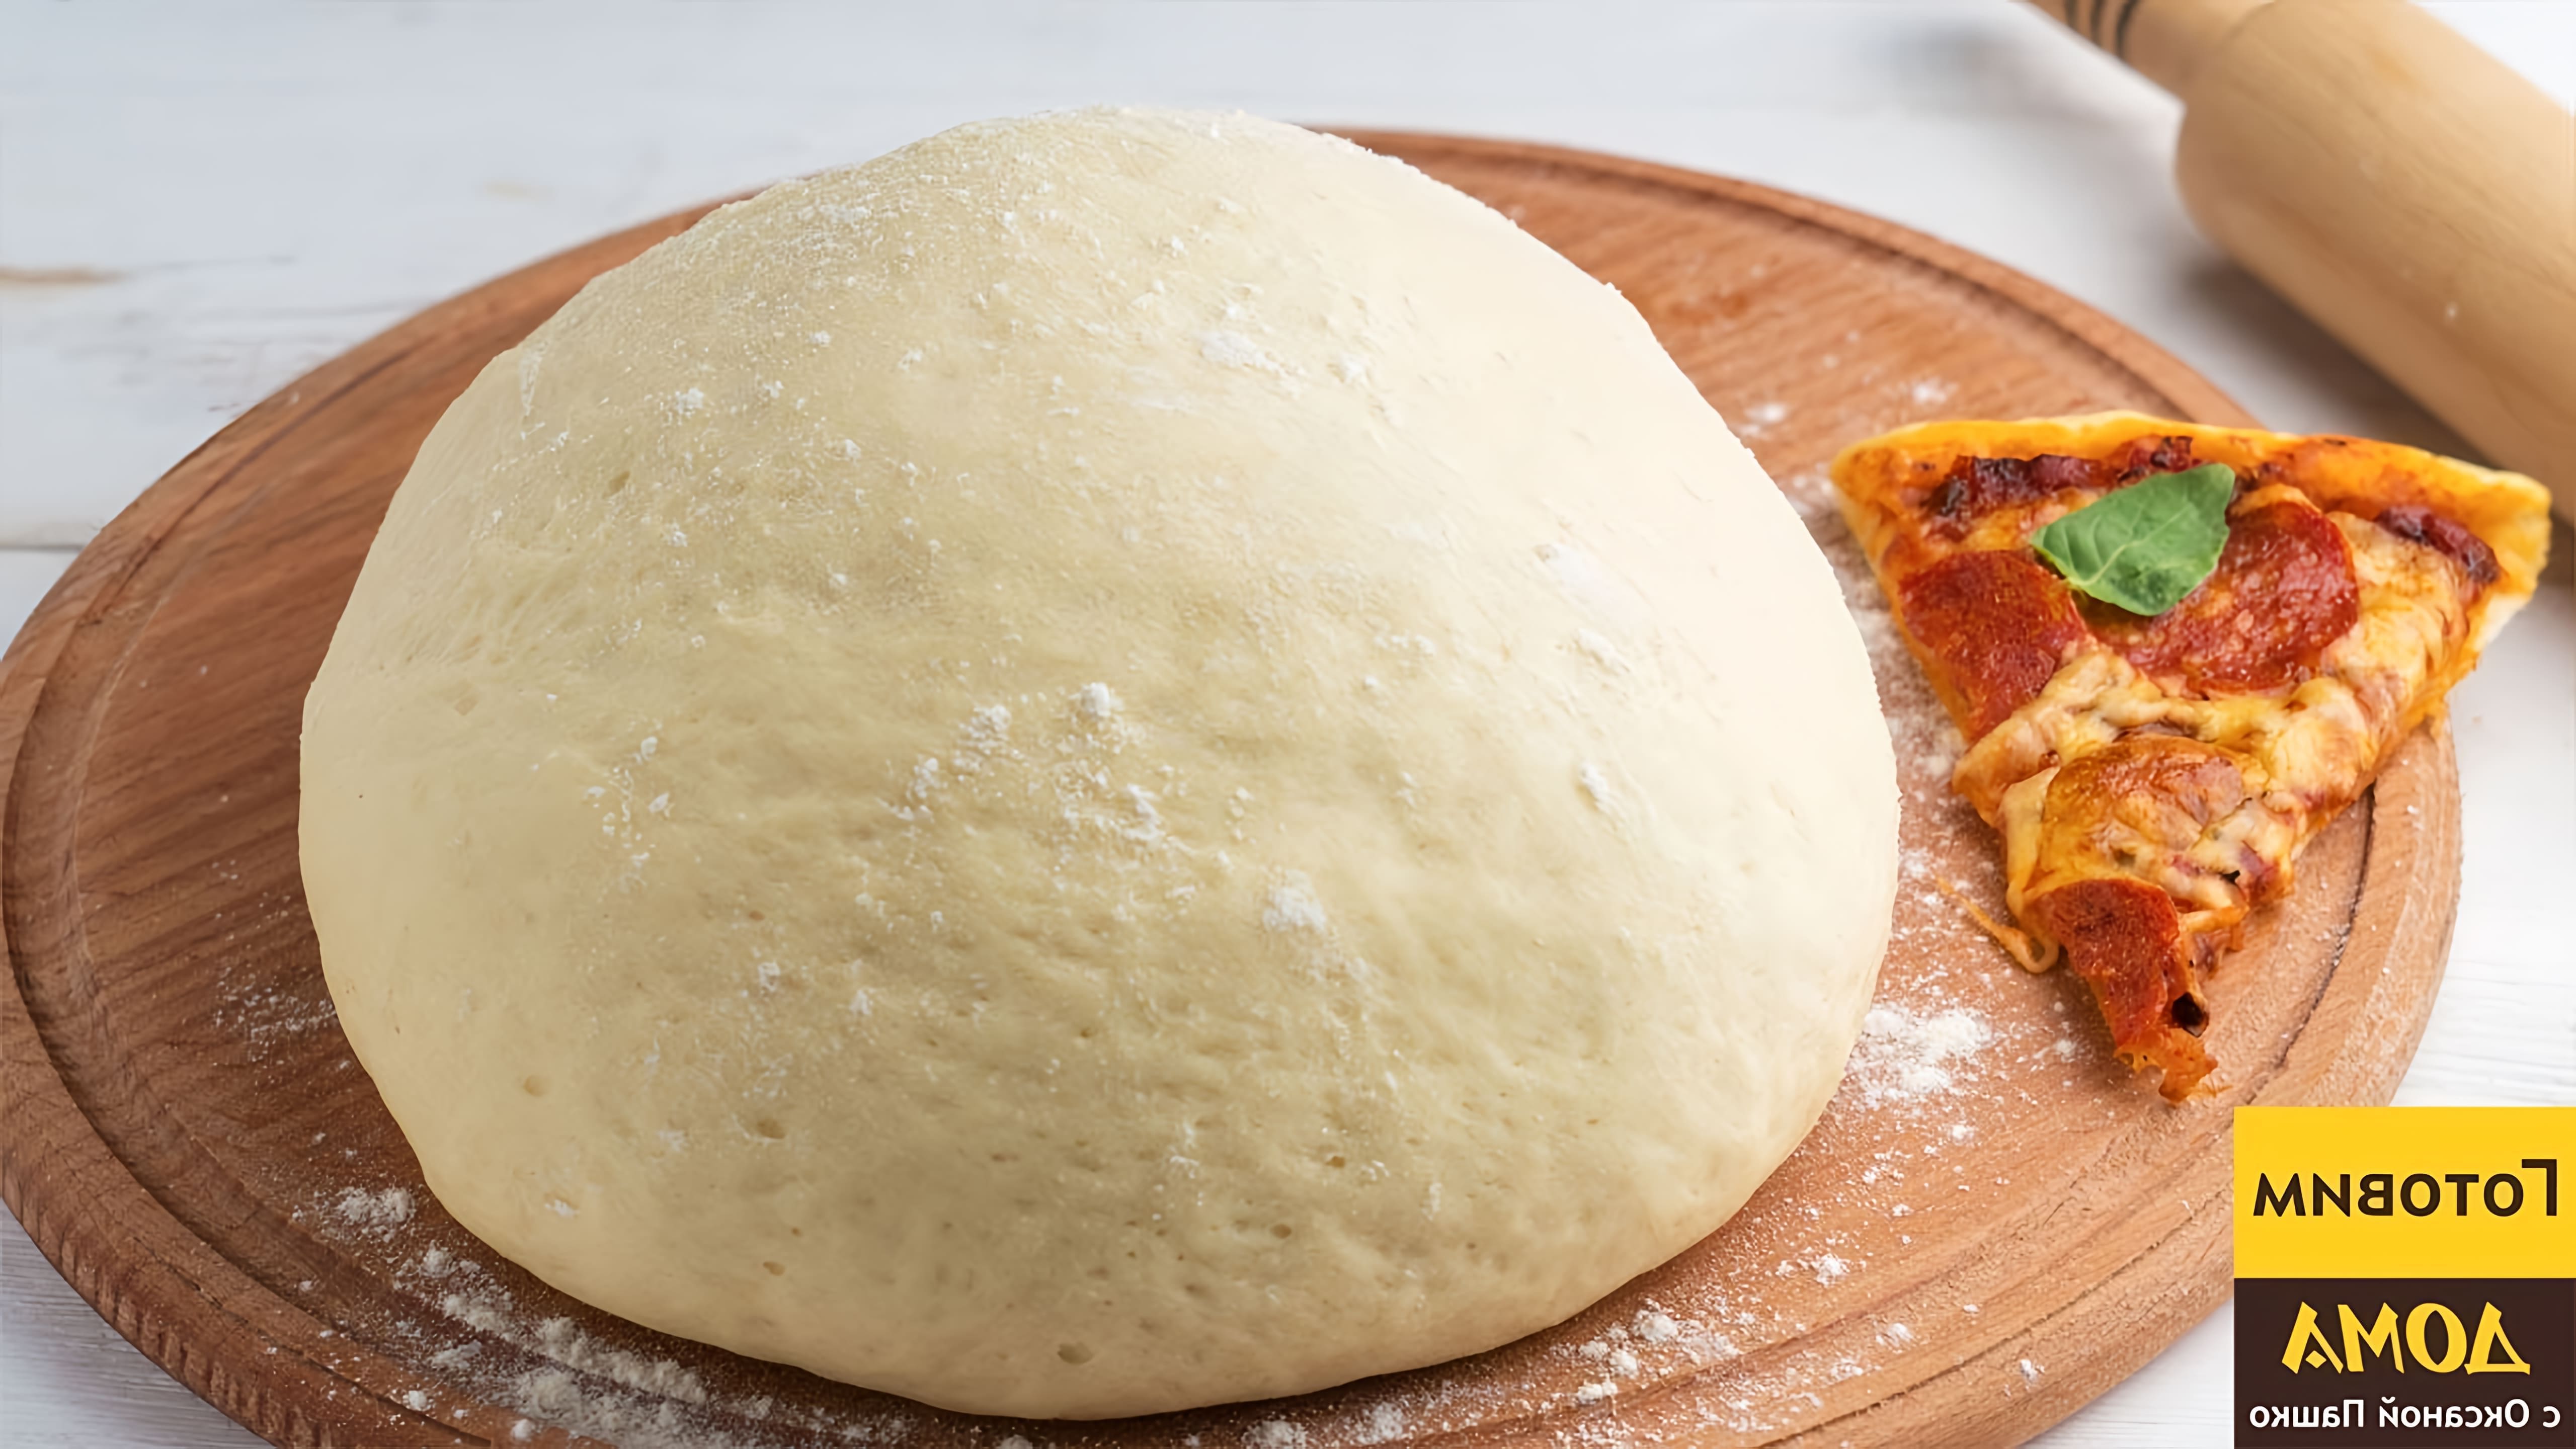 В этом видео демонстрируется рецепт приготовления теста для тонкой пиццы, который позволяет получить пиццу, напоминающую ту, что готовят в пиццерии